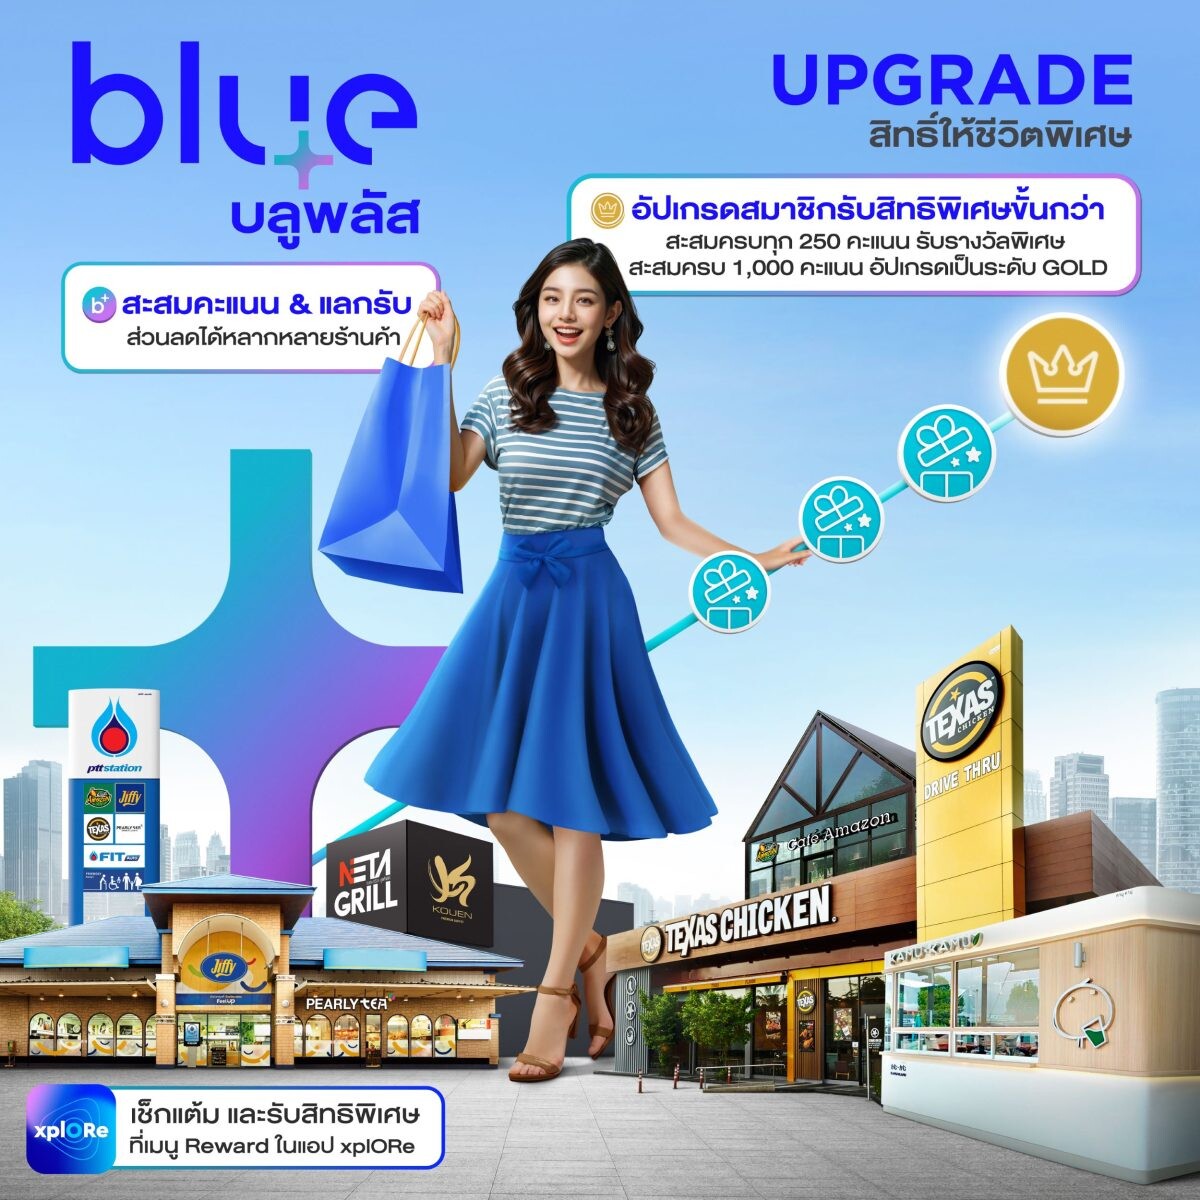 blueplus+ ส่งแคมเปญโฆษณาชุด blueplus+ #PlusTogether ชวนผู้คนพลัสความสุขให้มากกว่าเดิม โอกาสดี ๆ ที่พลาดไม่ได้